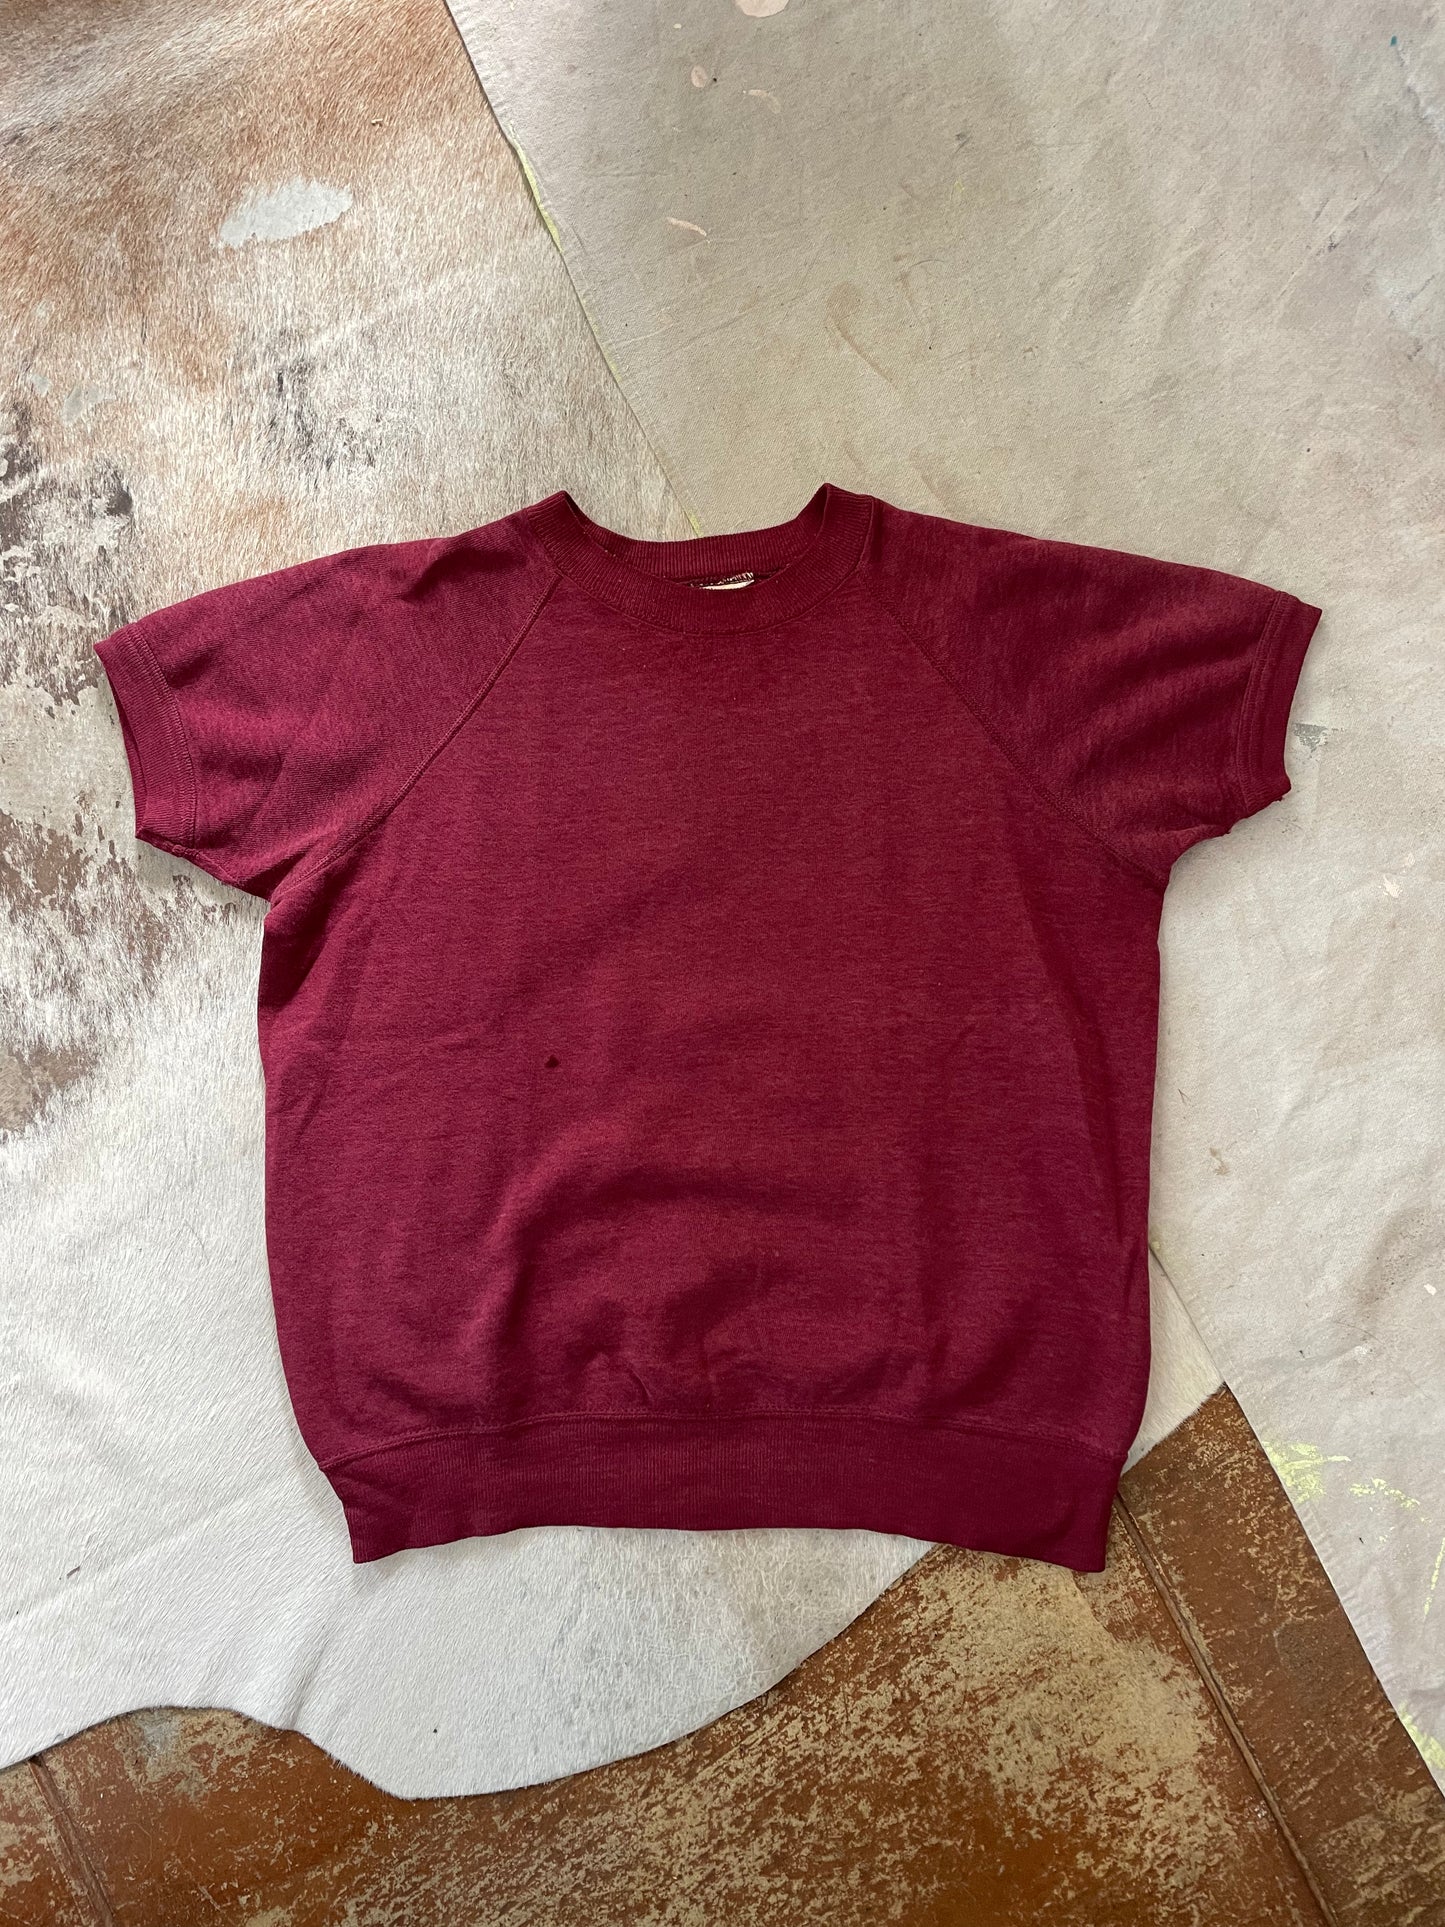 70s/80s Blank Maroon Short Sleeve Sweatshirt